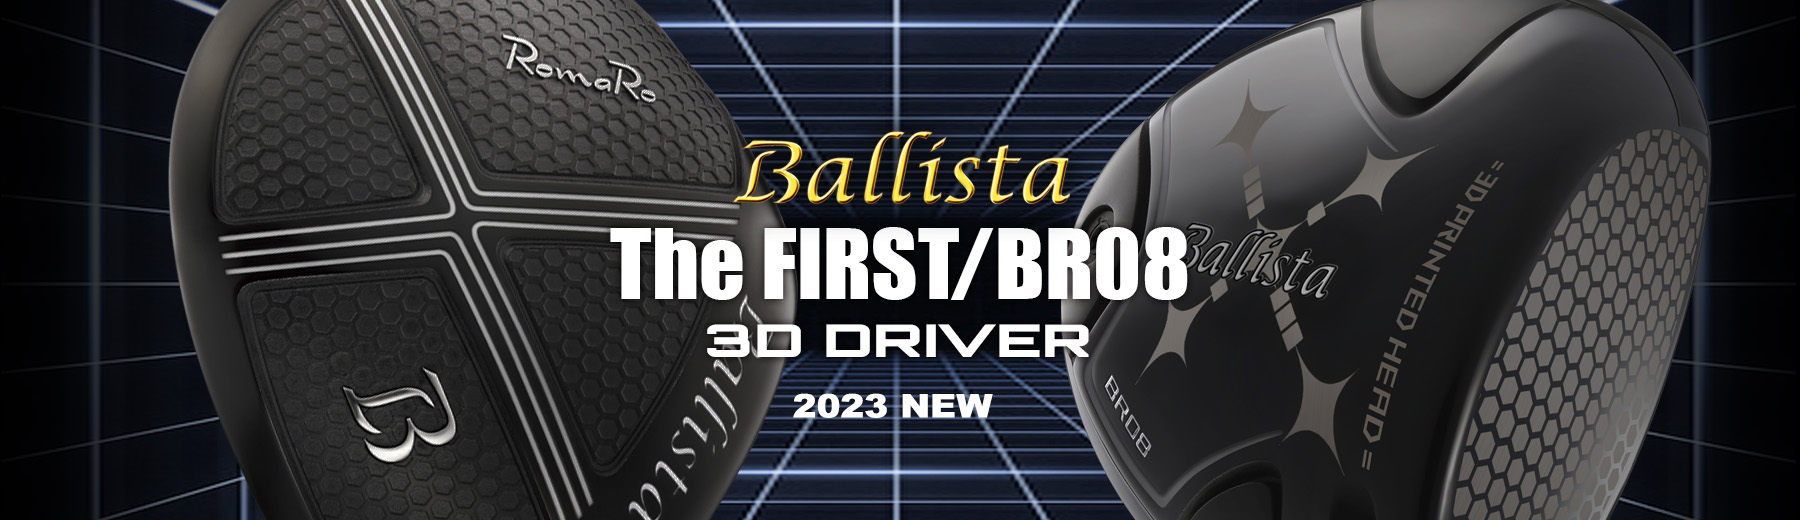 Ballista 3D DRIVER